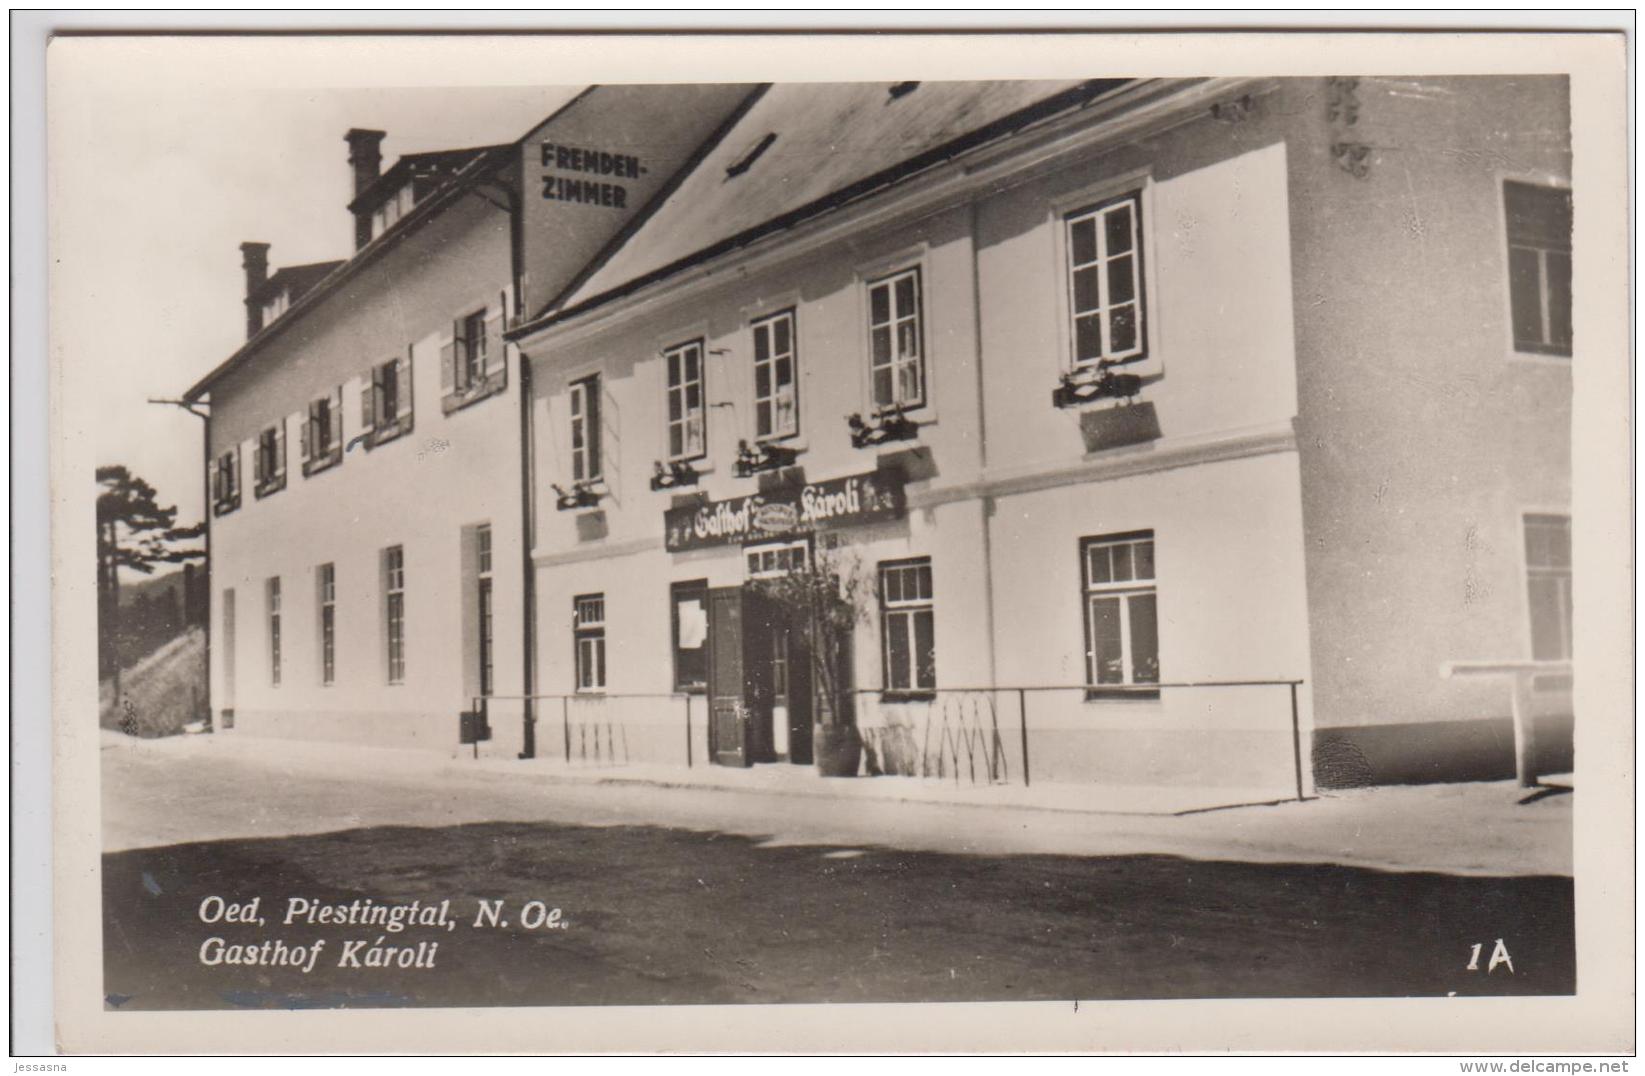 AK - NÖ - Oed - Piestingtal - Gasthof Karoli - 1930 - Wiener Neustadt